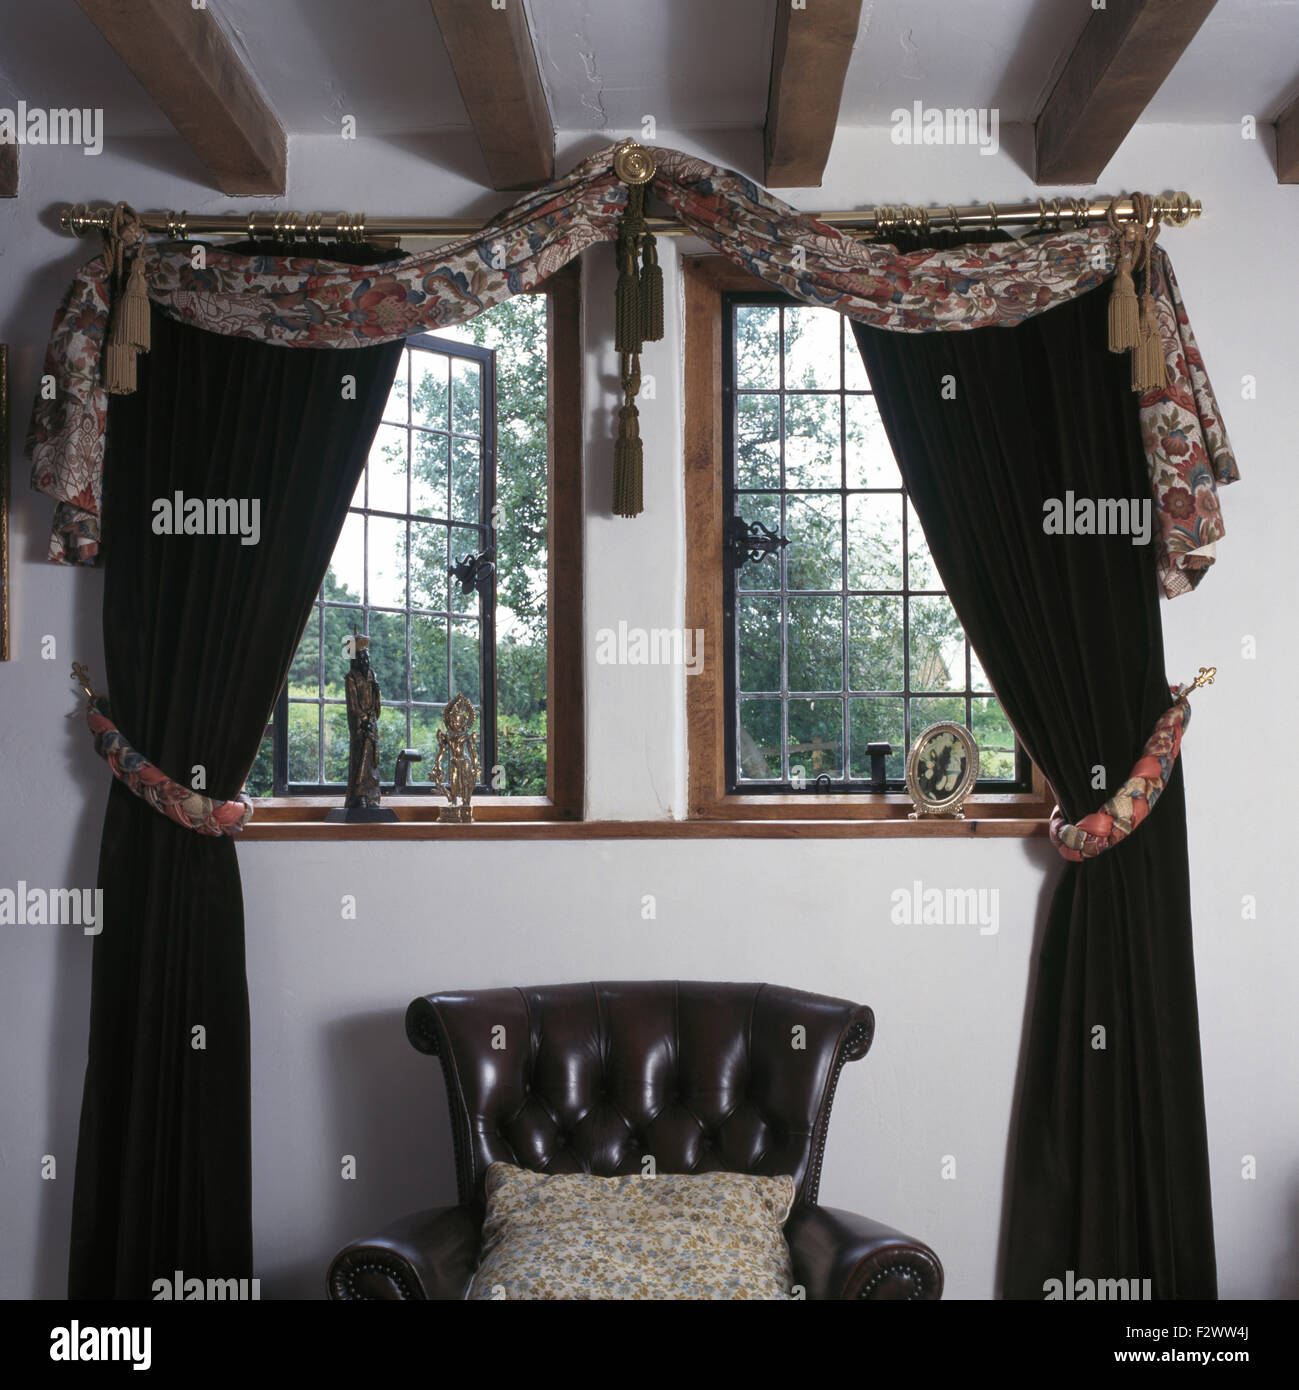 Tessuto drappeggiato e tende nere sulla finestra di reticolo nero sopra la sedia di cuoio degli anni novanta in camera da letto Foto Stock